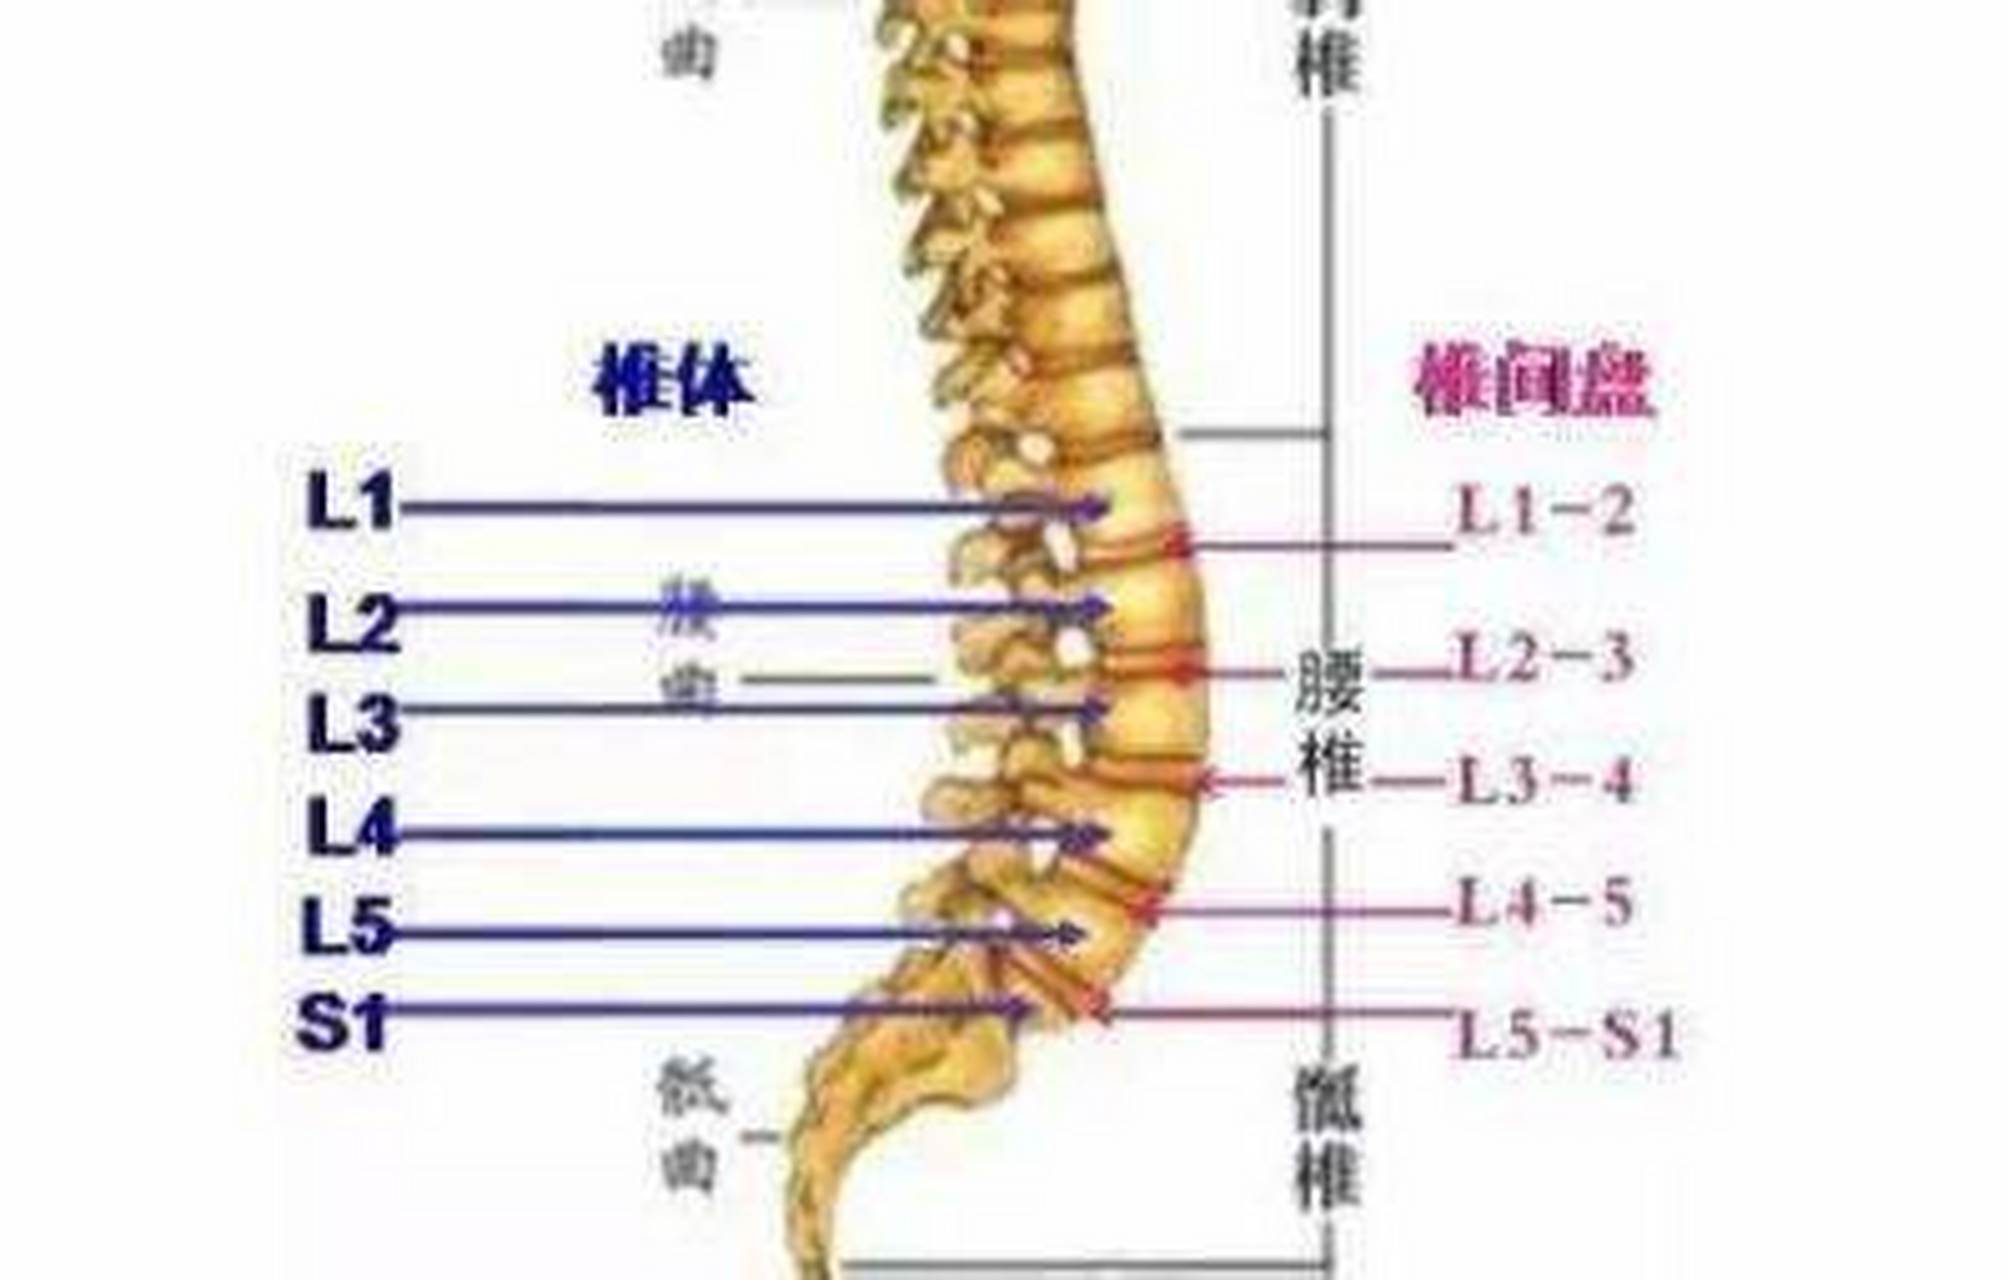 我们的腰椎一共有五节,它和骶骨共同构成了五个运动节段,分别是腰12